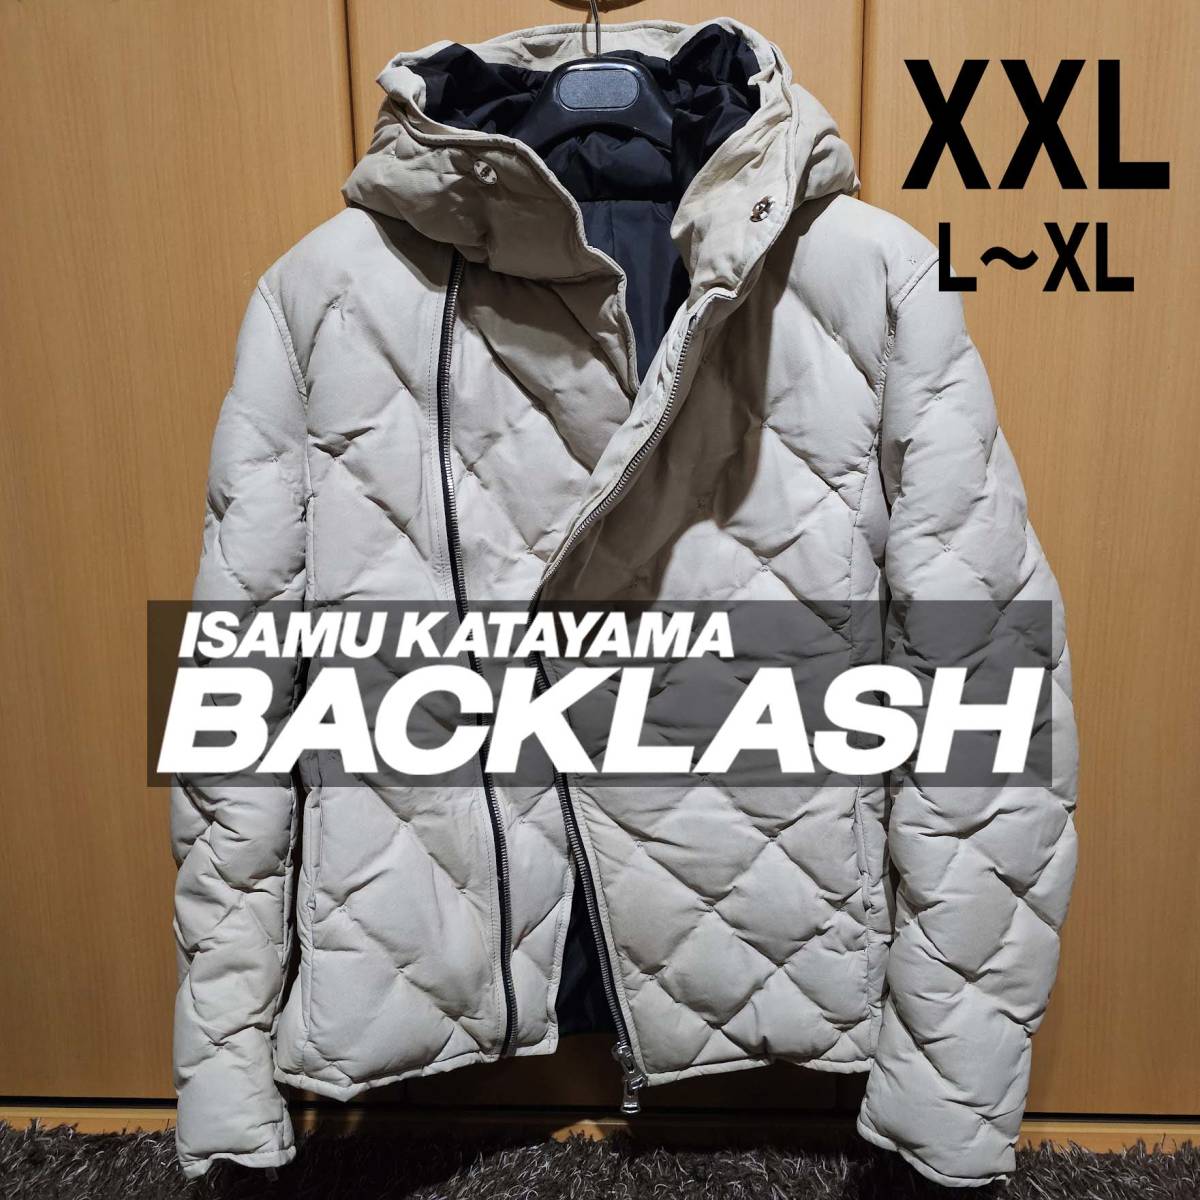 貴重サイズ XXL 5 ISAMU KATAYAMA BACKLASH カンガルーレザー ダウンジャケット ベージュ ホワイト 白